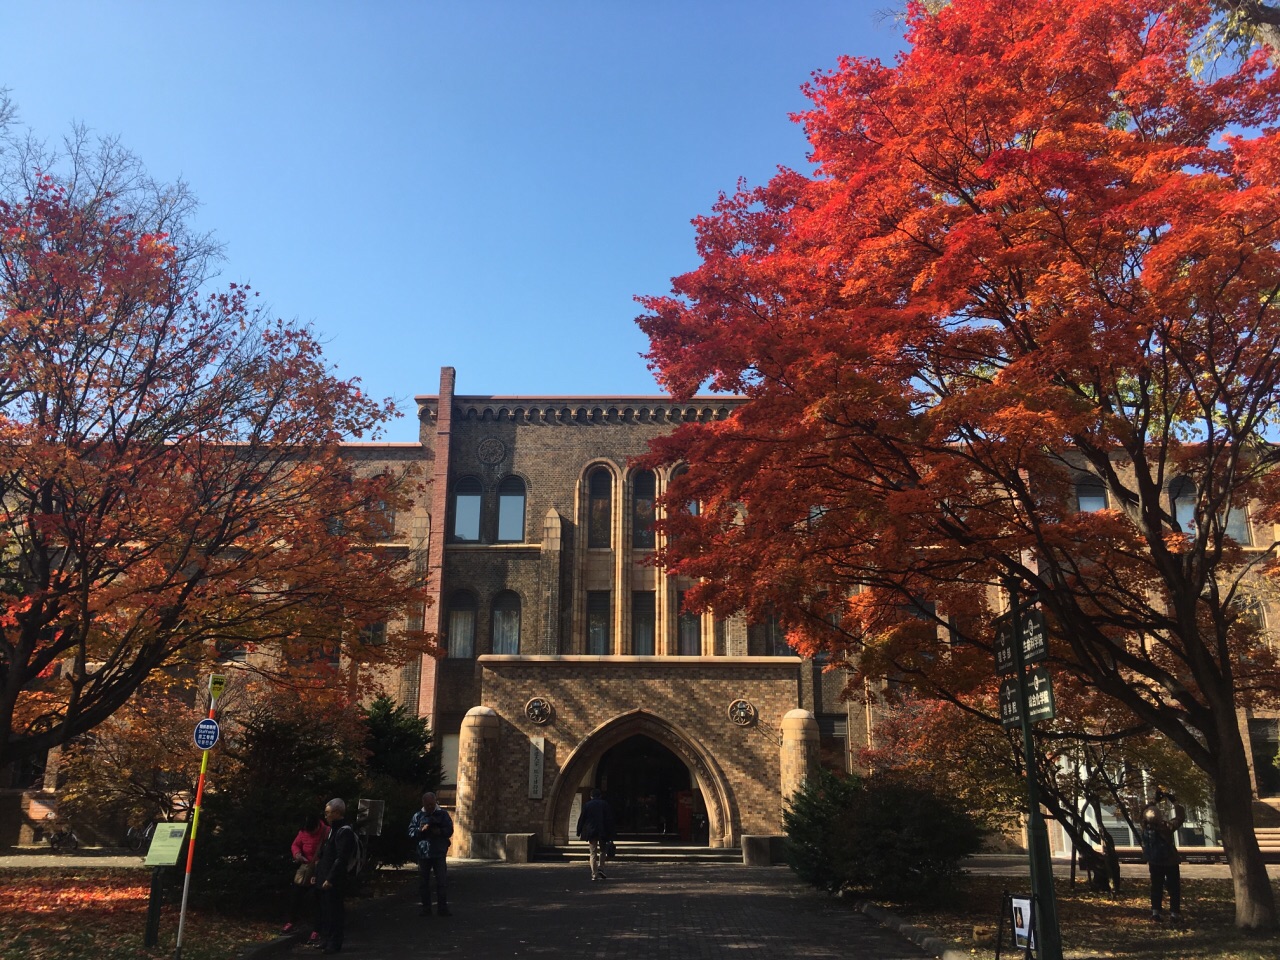 北海道大学